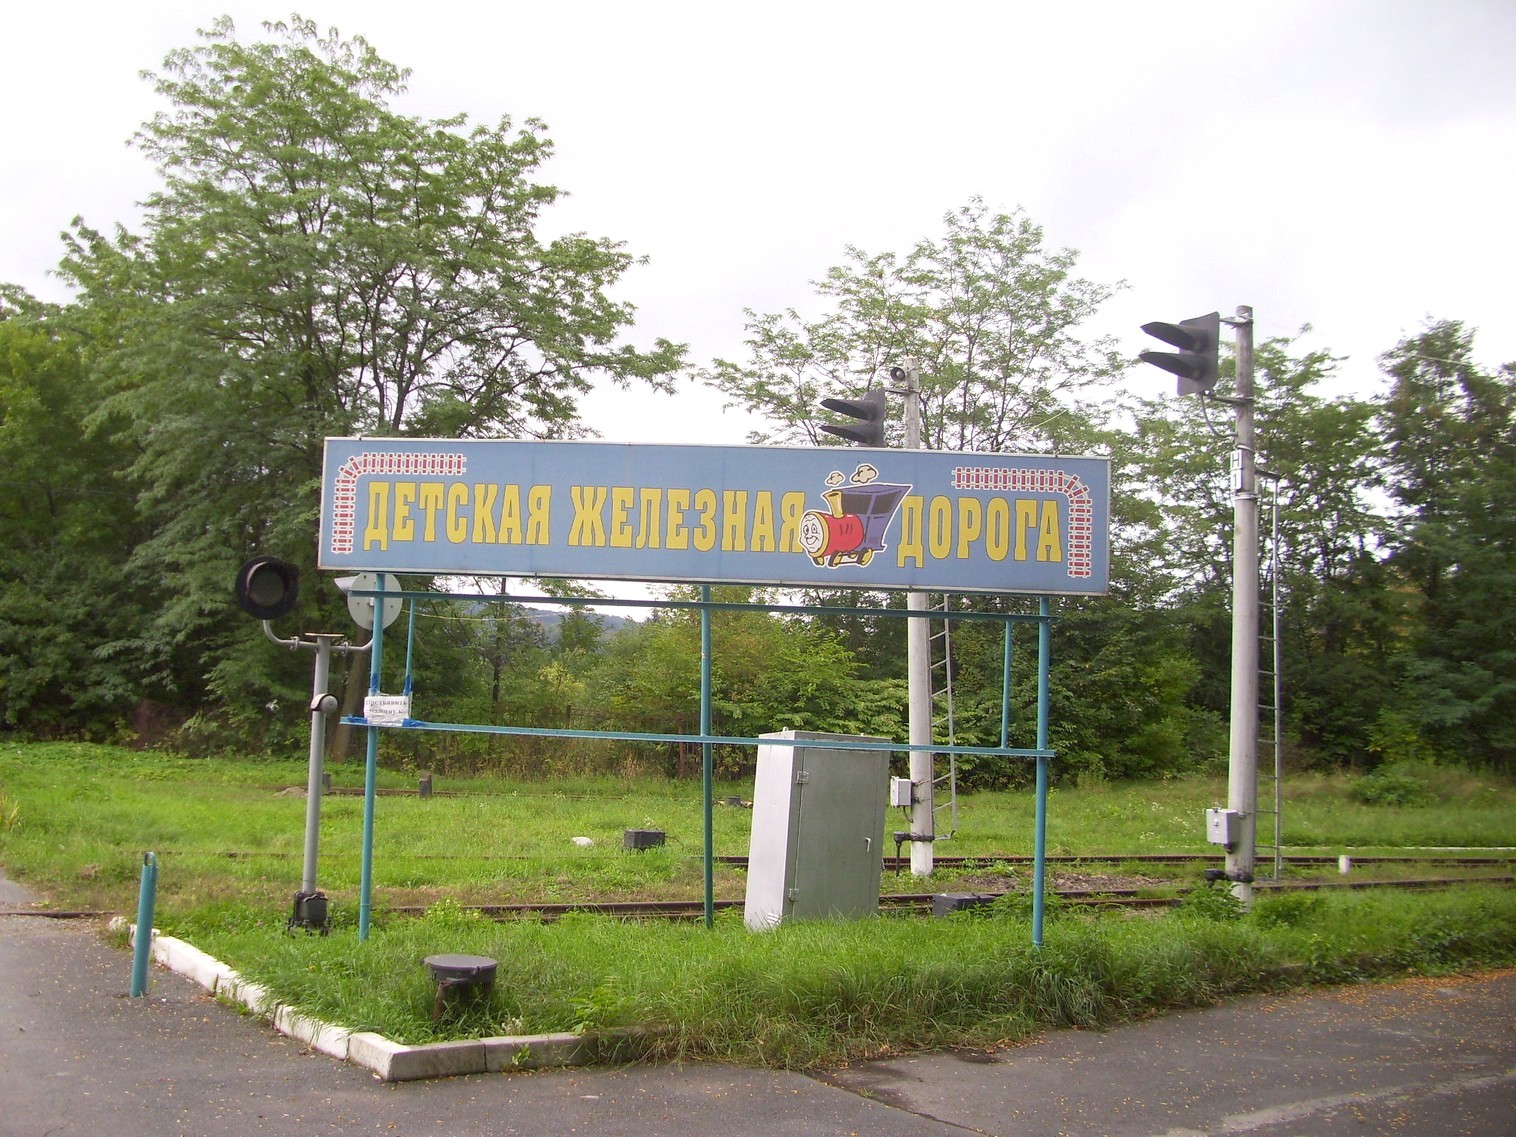 Владикавказская детская железная дорога  —  фотографии, сделанные в 2011 году (часть 1)